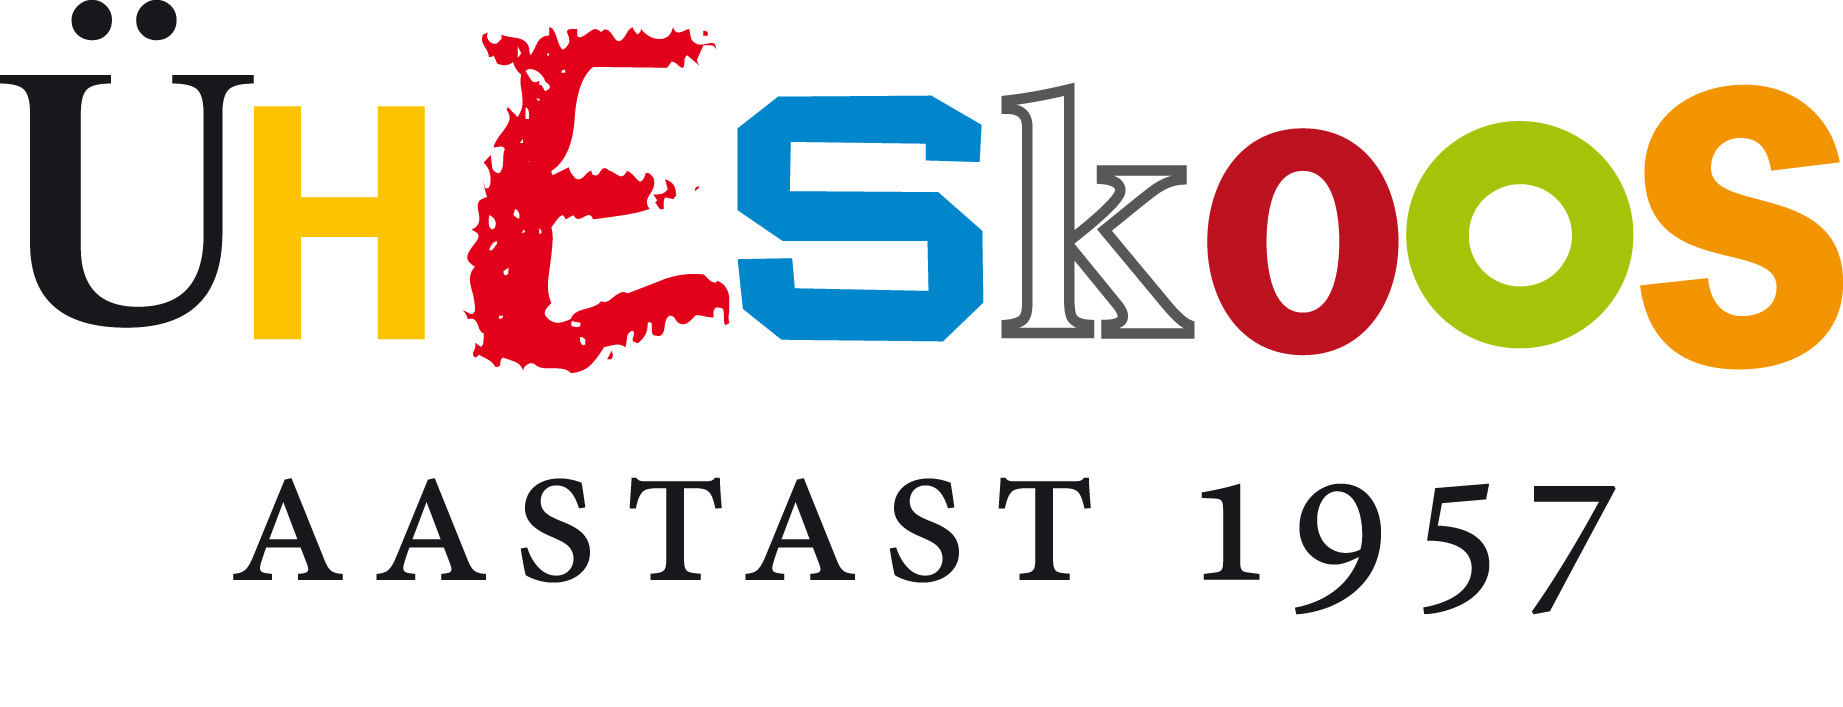 エストニア語のロゴ